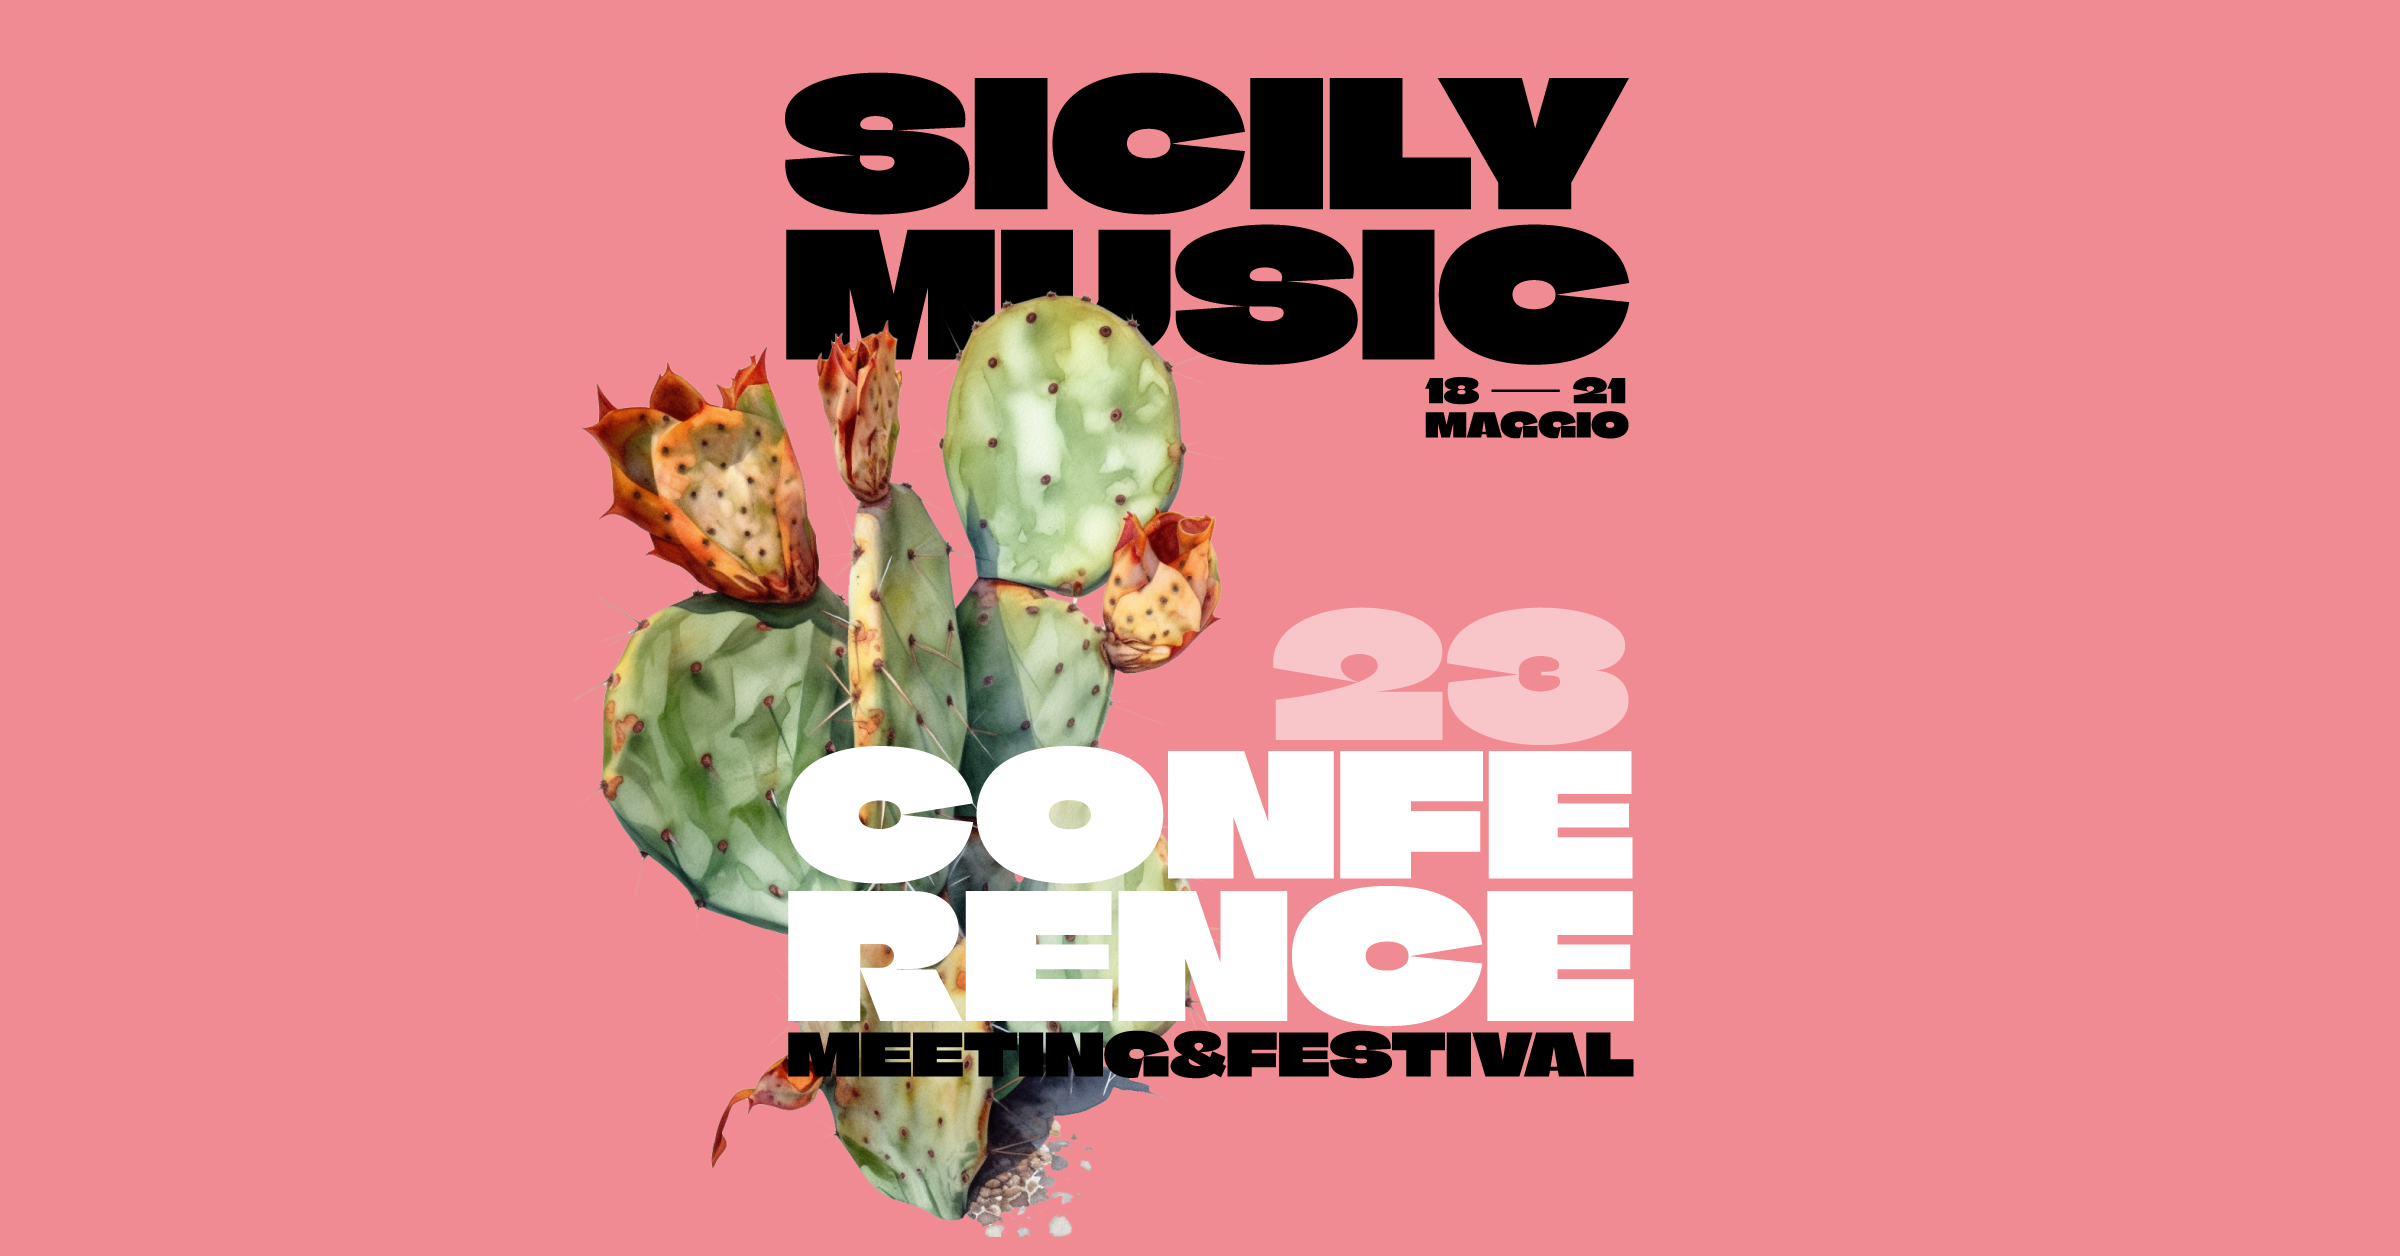 Torna per il secondo anno consecutivo la Sicily Music Conference | Meeting & Festival, l’unica conferenza internazionale sulla musica in Sicilia